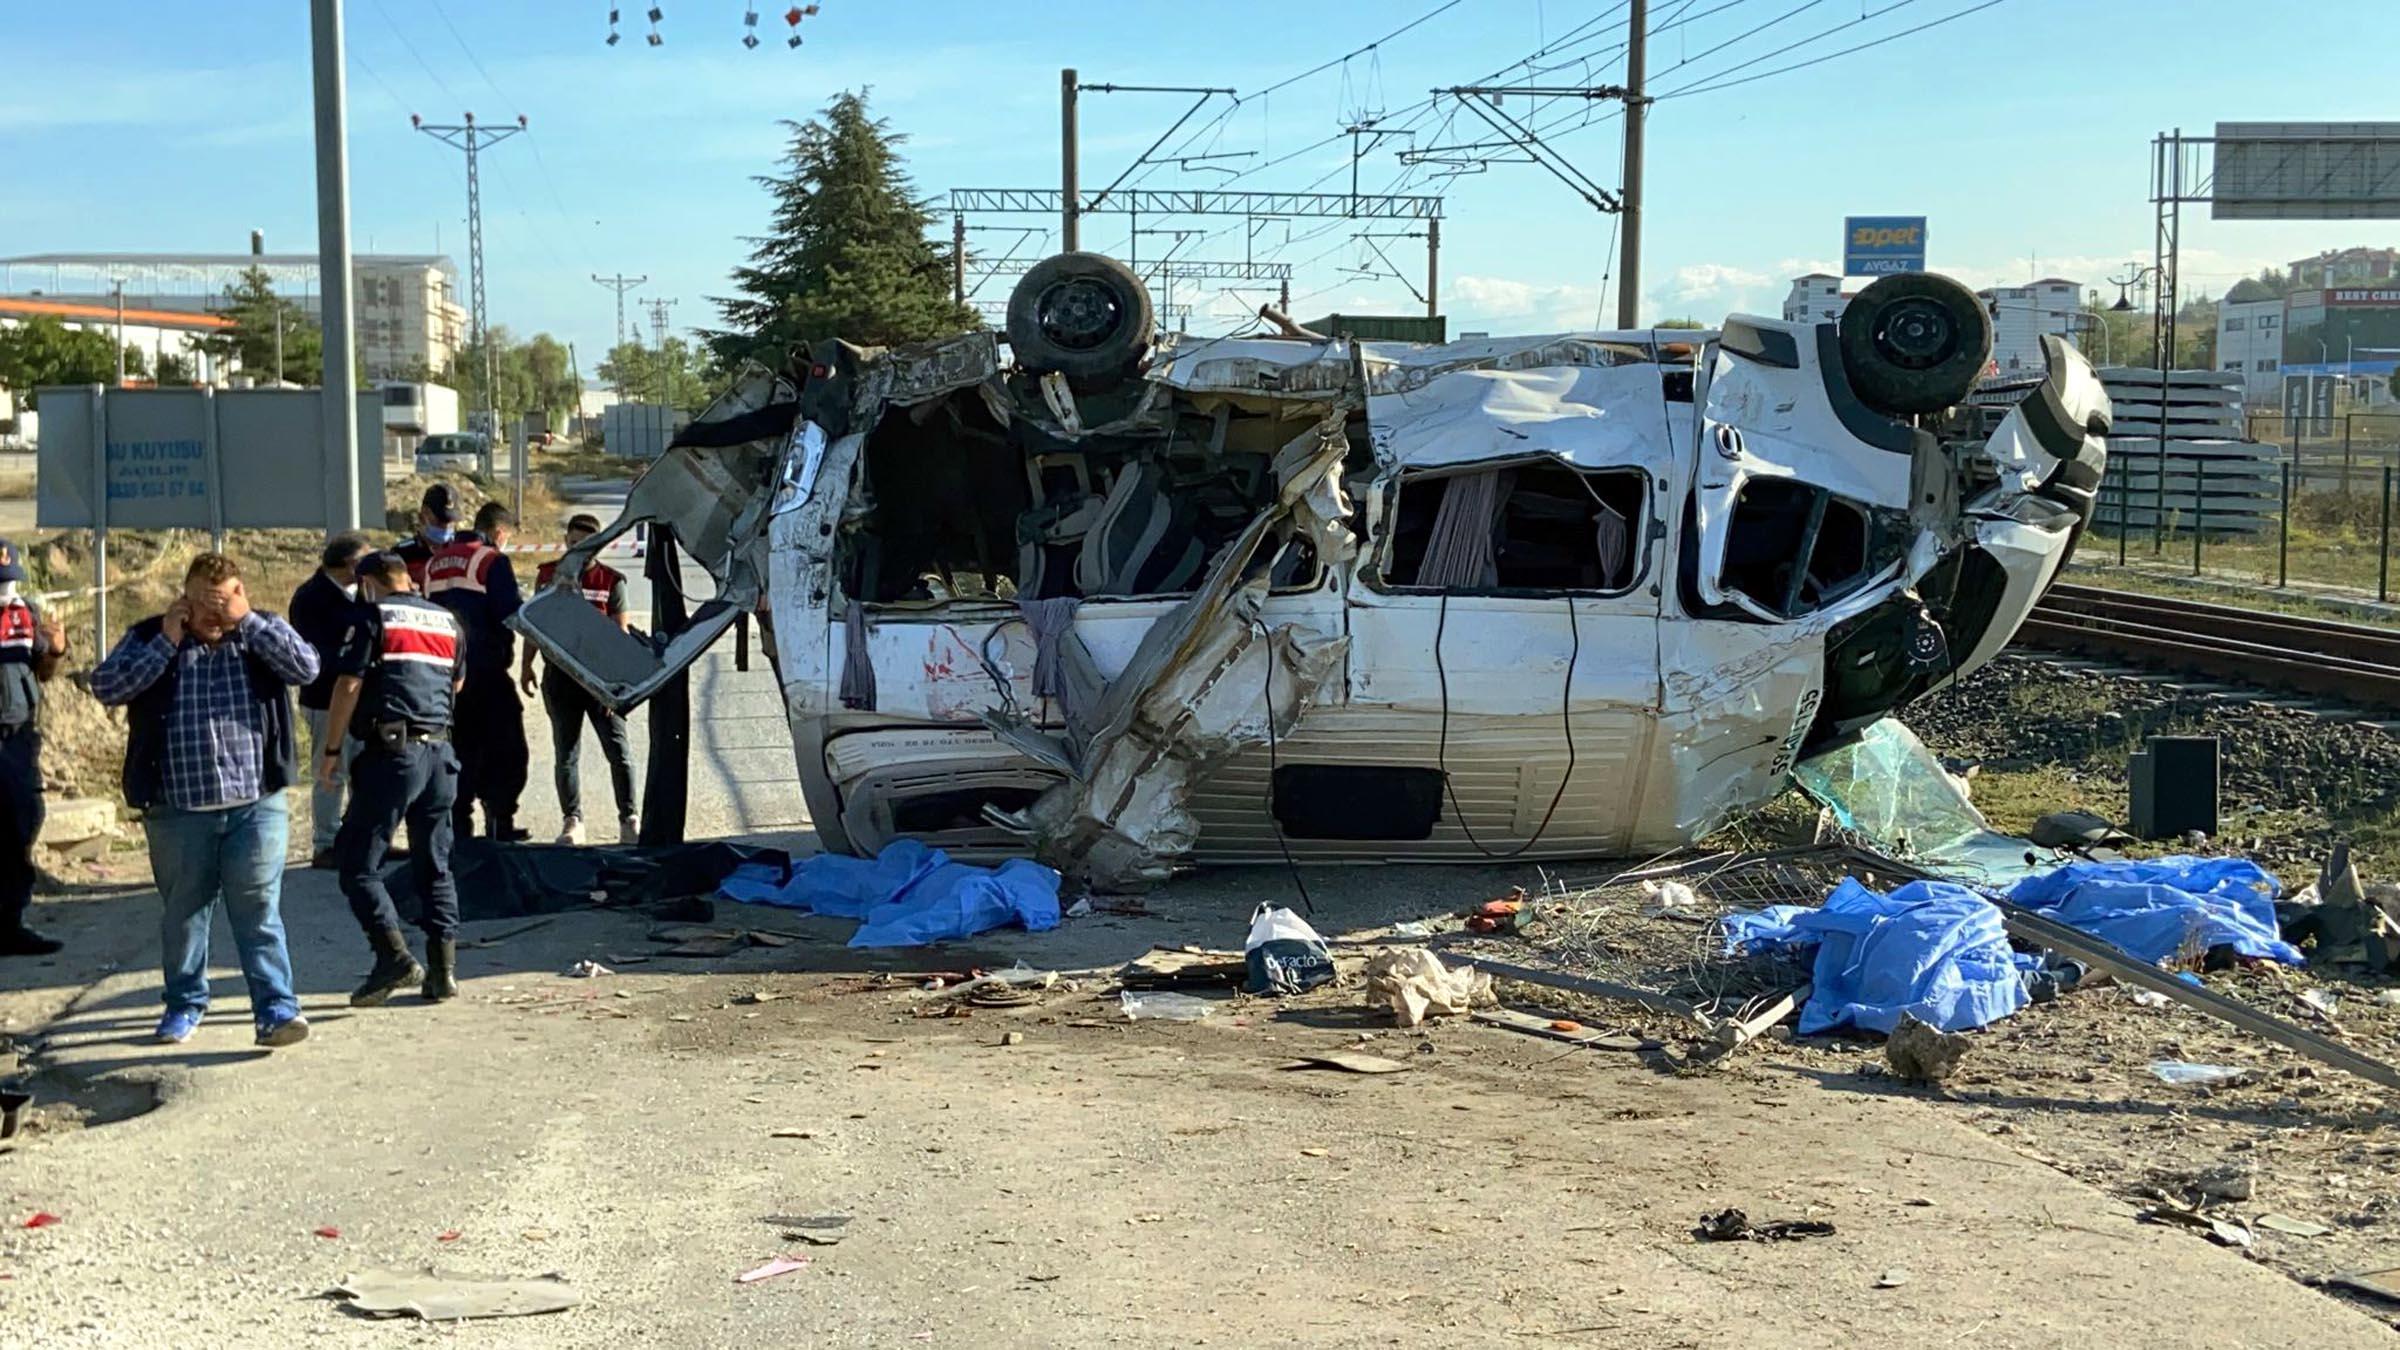 Yük treni, hemzemin geçitte servis minibüsüne çarptı: 6 ölü, 7 yaralı